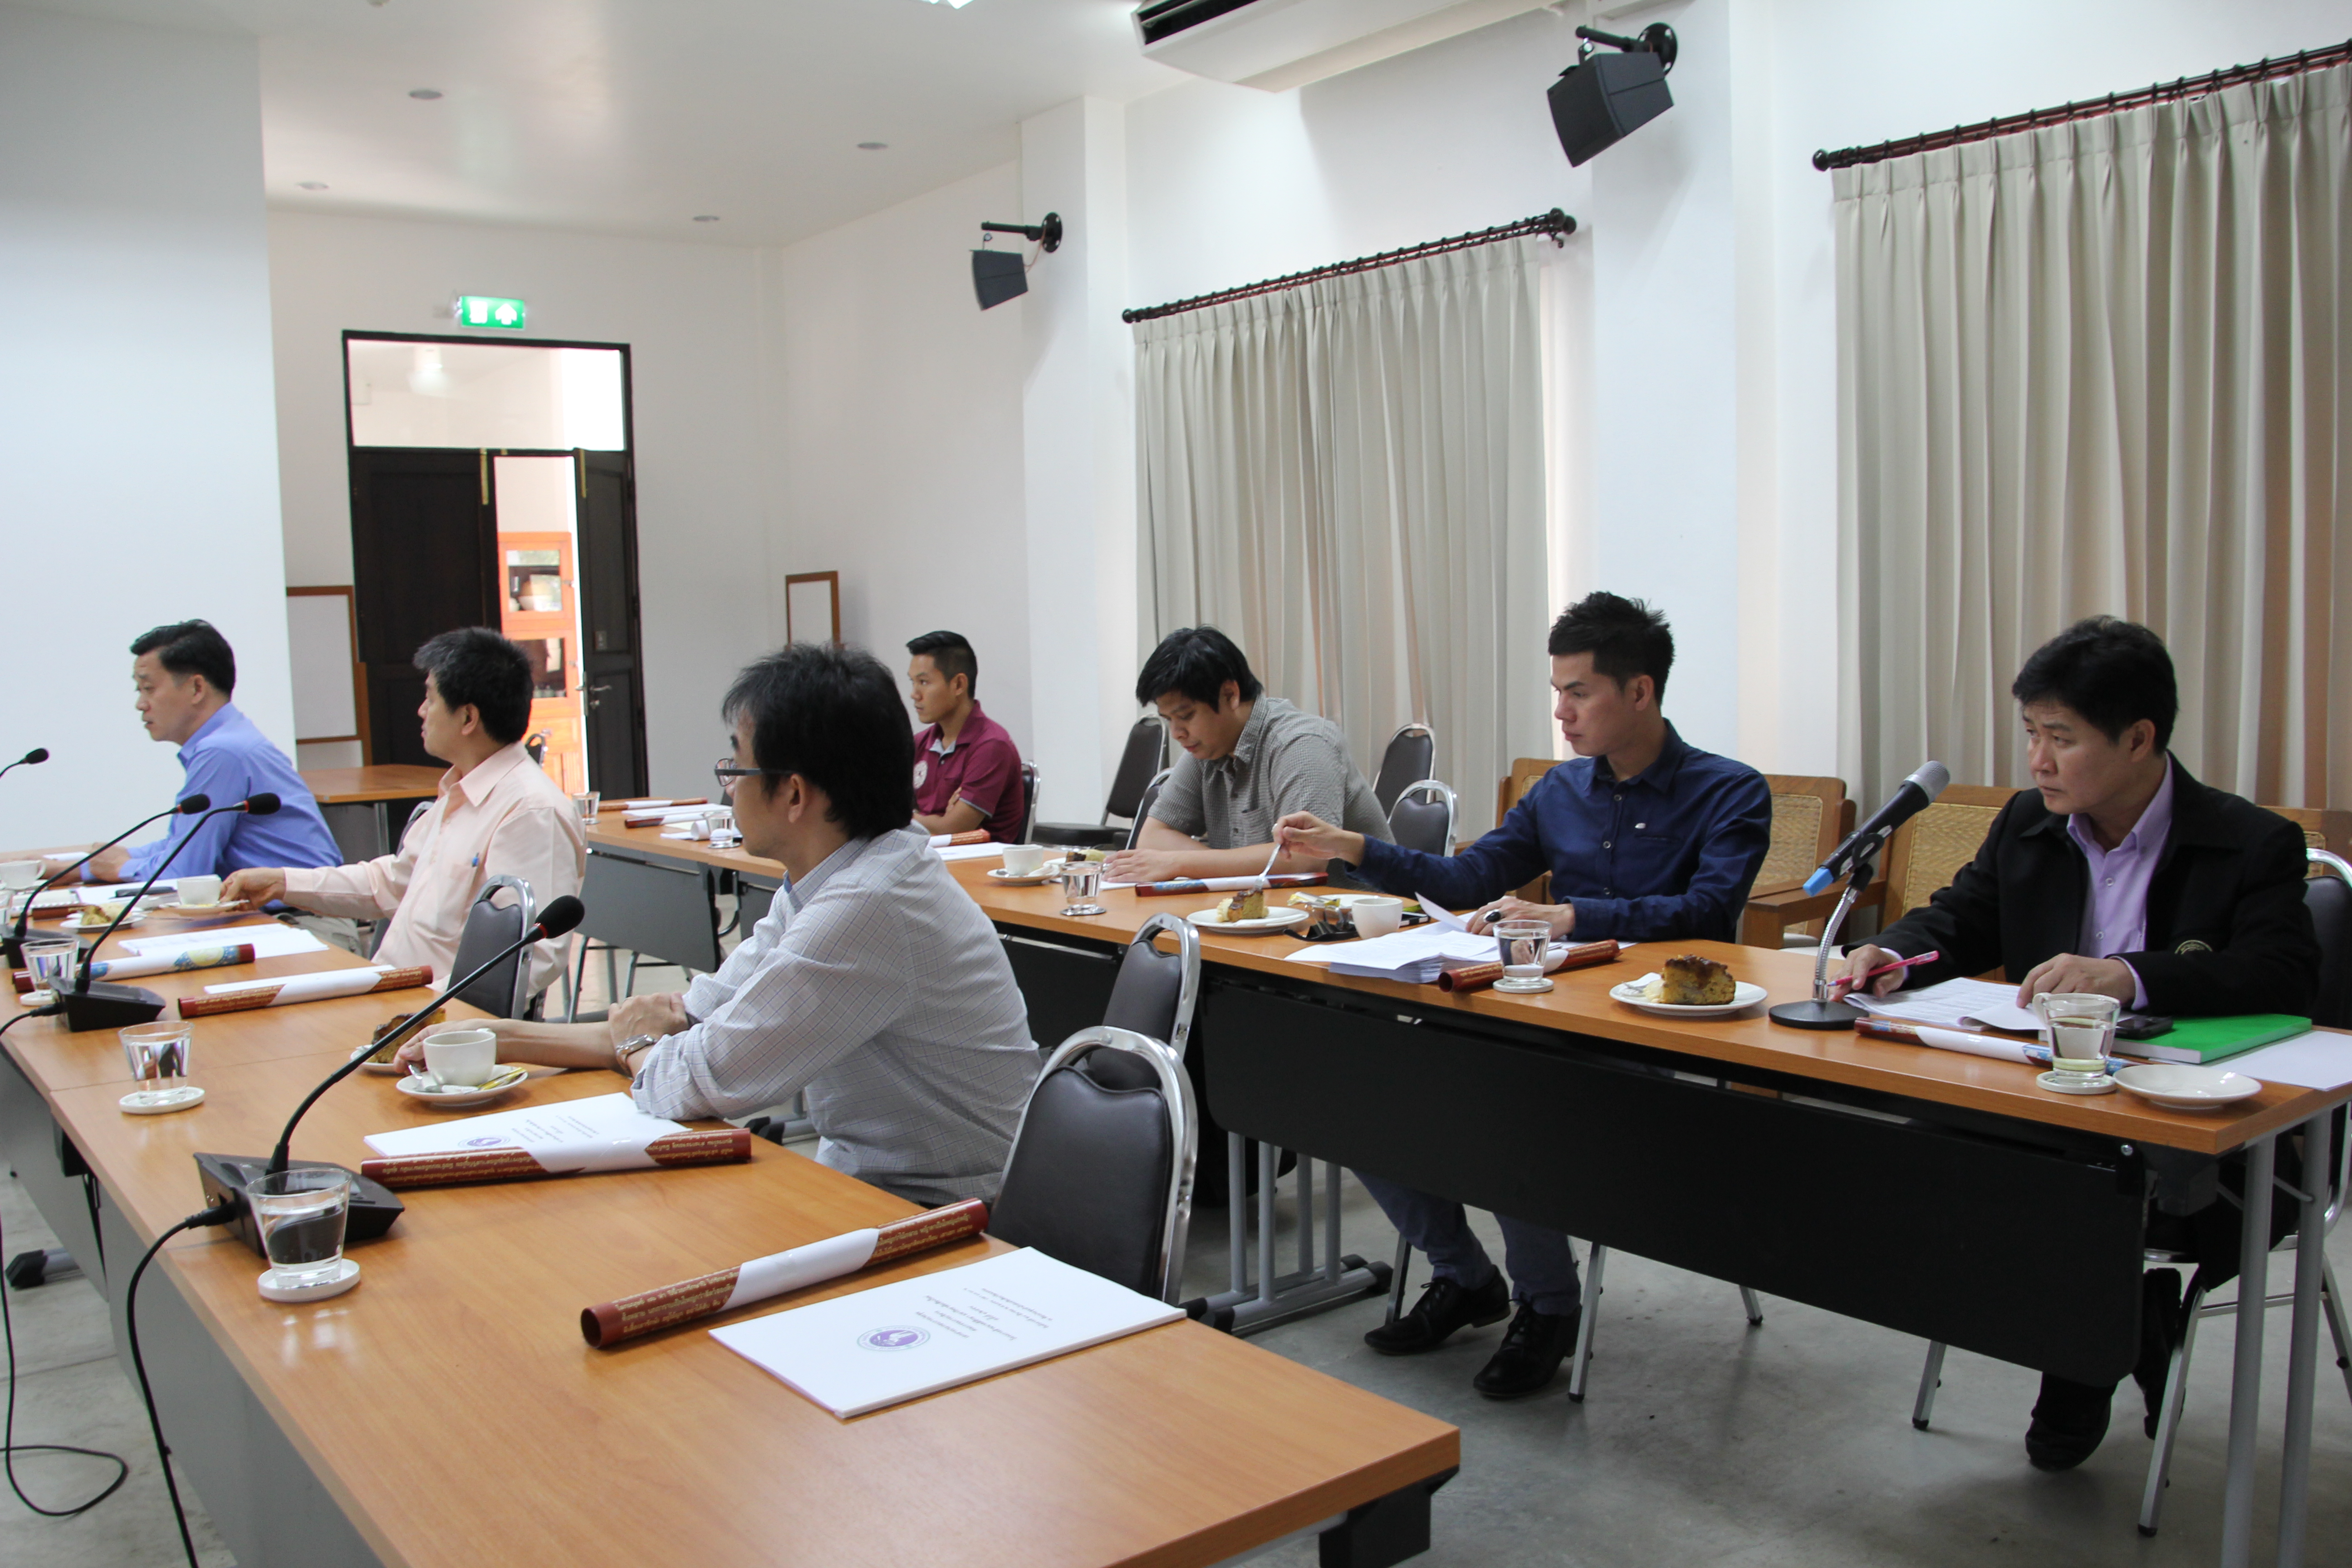 การประชุมคณะกรรมการบริหารโครงการล้านนาคดีศึกษา มหาวิทยาลัยเชียงใหม่ ครั้งที่ 1/2558